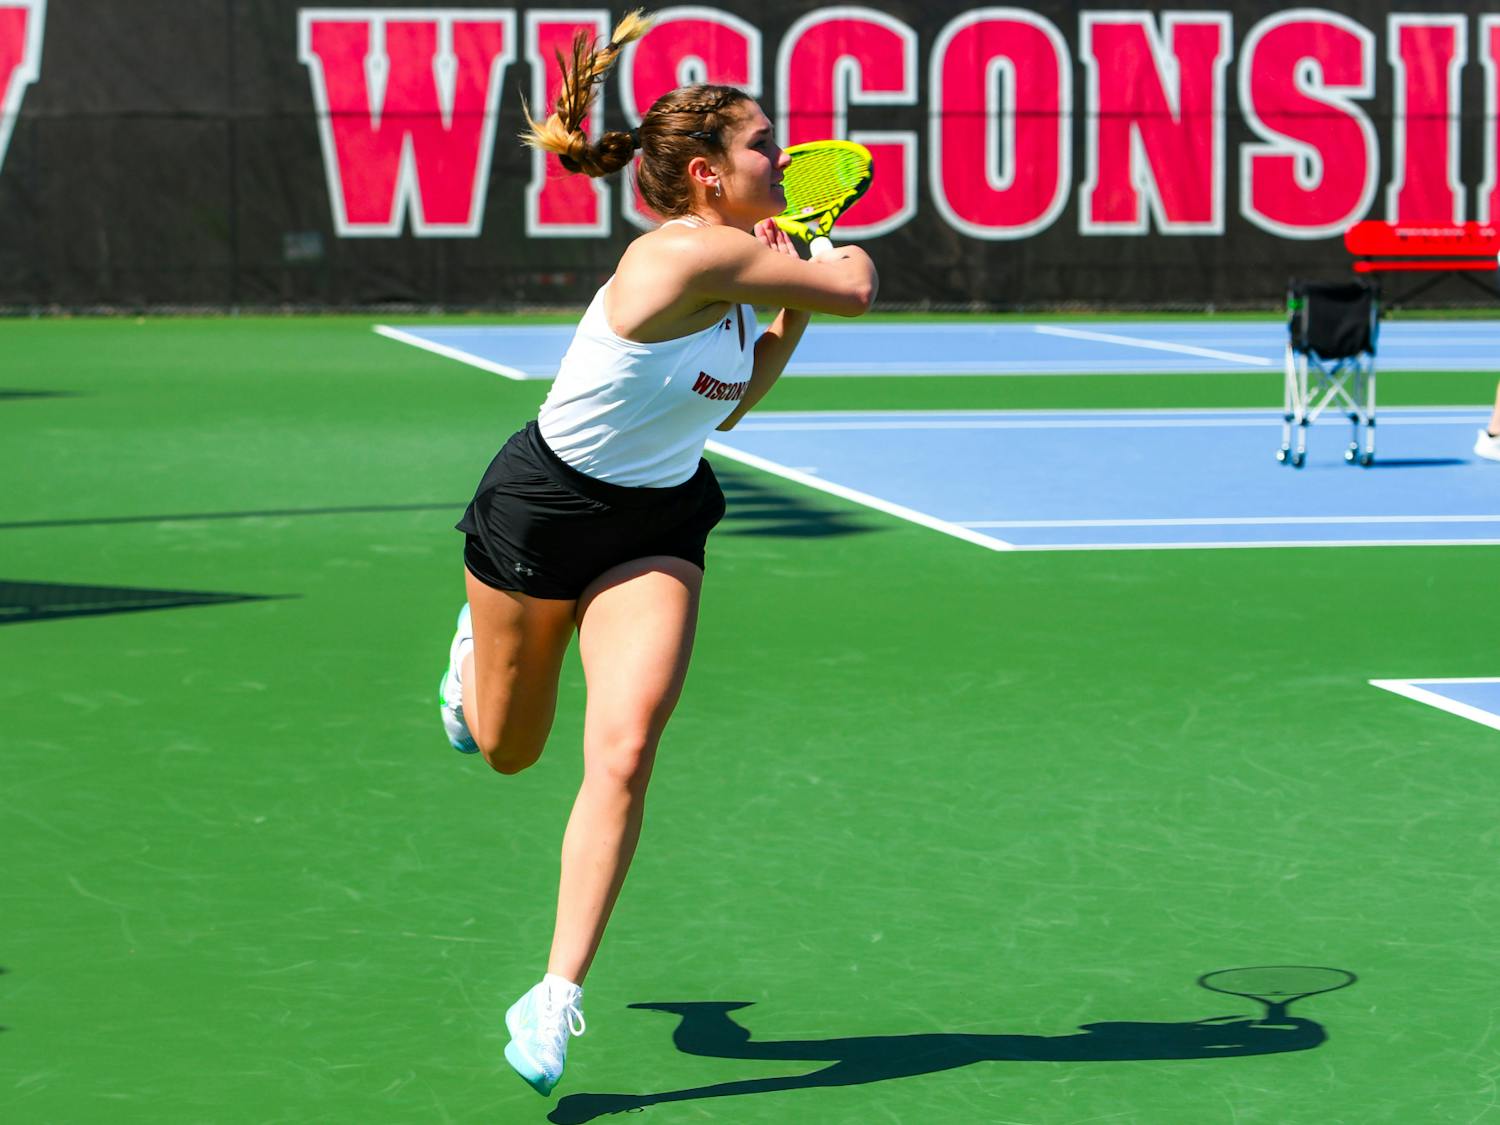 Wisconsin Womens Tennis vs Michigan State0009.JPG